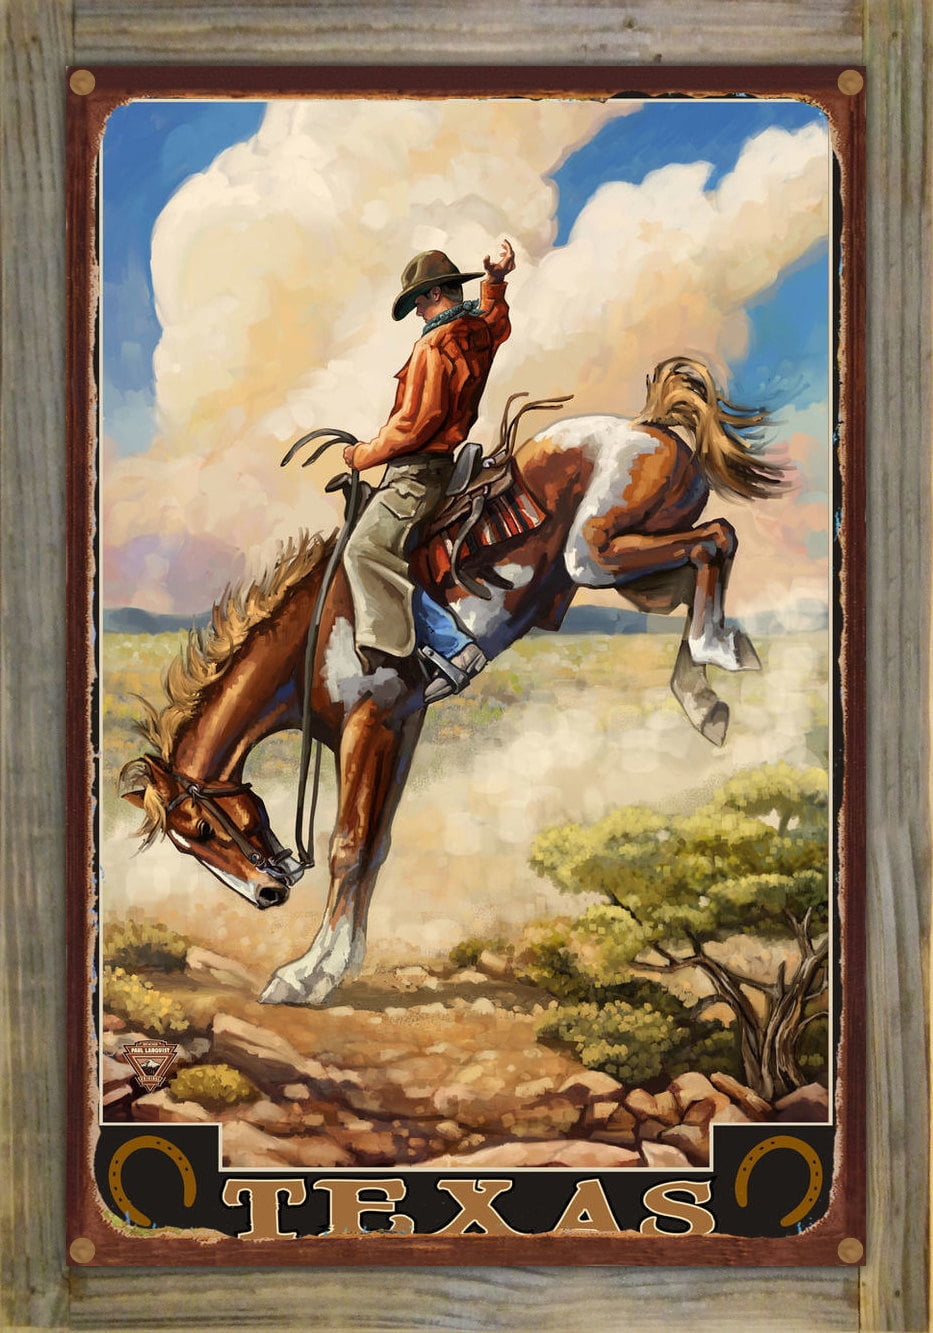 Lanquist Utah Cowboy Giclee Art Print Poster from Original Travel Artwork by Artist Paul A